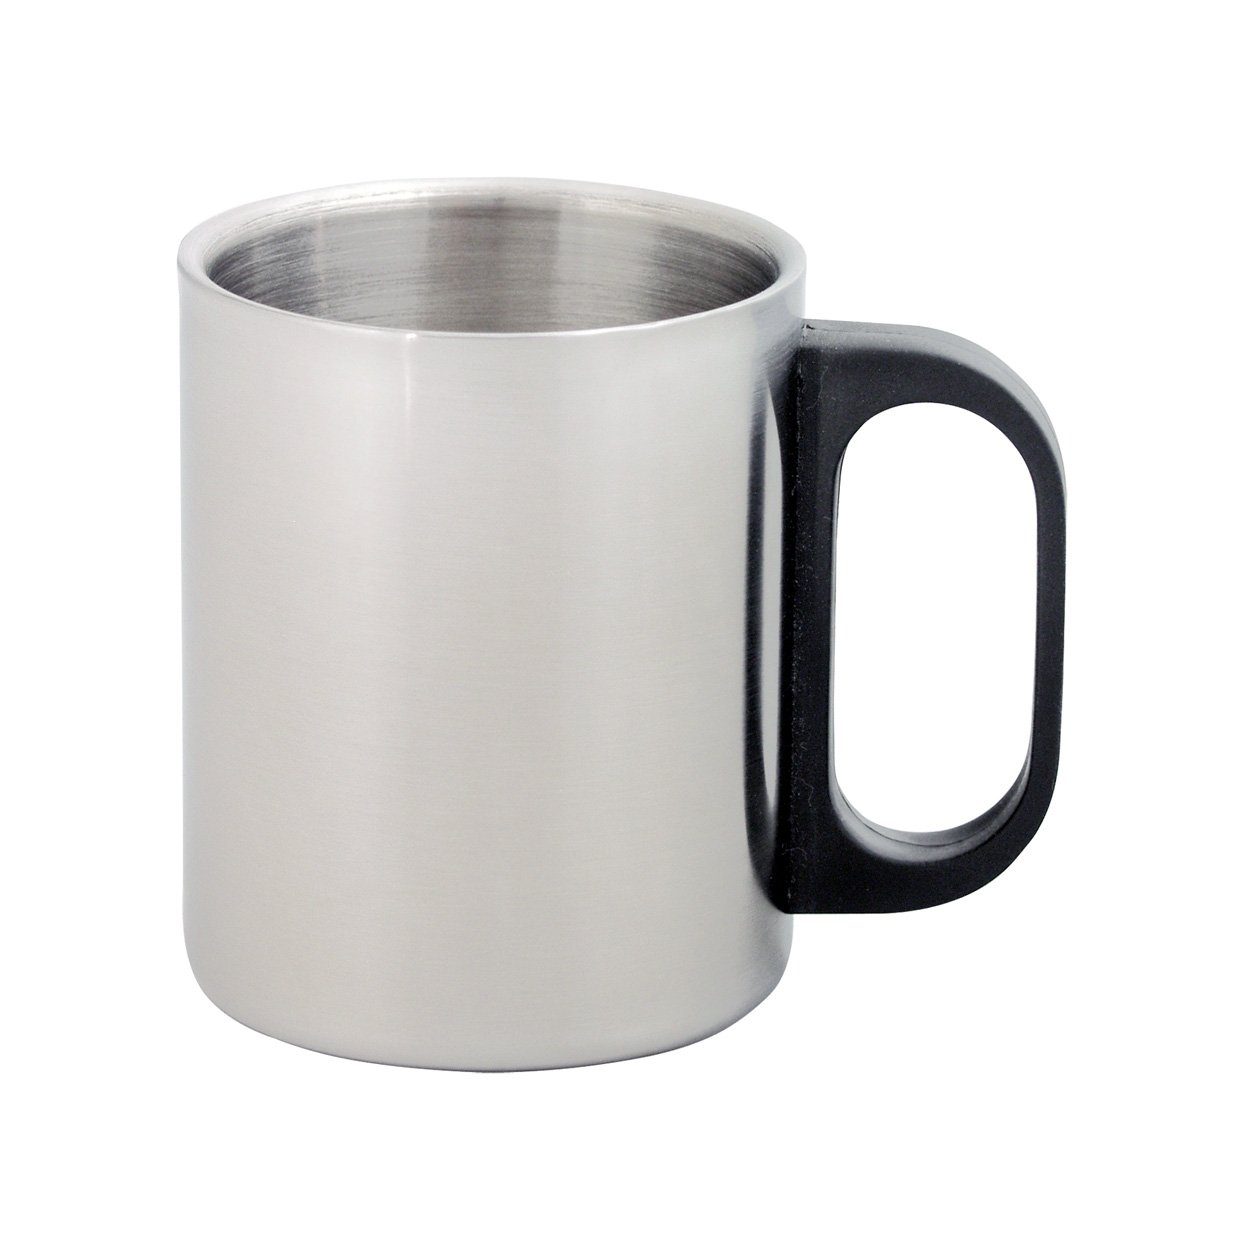 Metal thermo mug GILBERT, 175 ml - silver / black